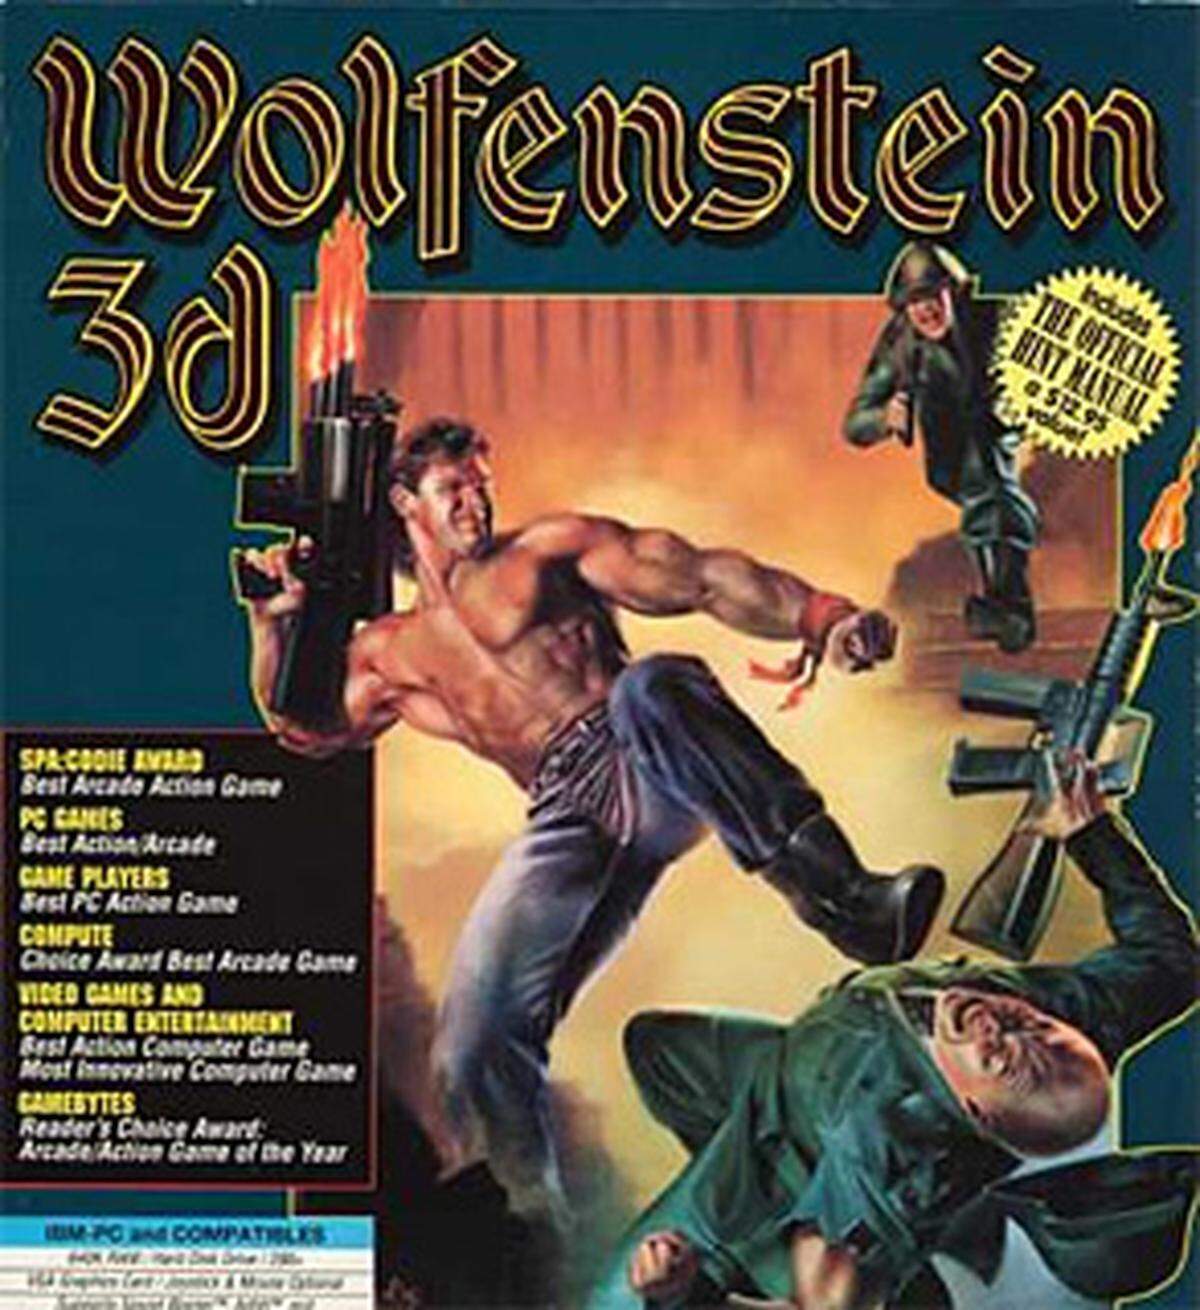 In Deutschland reagiert man - wenig überraschend - besonders sensibel auf Inhalte, die auf den Nationalsozialismus Bezug nehmen. Das bekannteste verbotene Game ist sicherlich das Ego-Shooter-Urgestein Wolfenstein 3D, das in den 90er-Jahren weltweit Verkaufserfolge feierte. In dem Spiel muss sich ein amerikanischer Soldat aus einer Nazi-Gefangenschaft befreien. Einer der Endgegner tritt als Hitler auf und als Titelmelodie ertönte das Horst-Wessel-Lied. 1994 wurde Wolfenstein 3D in Deutschland bundesweit beschlagnahmt und verboten.